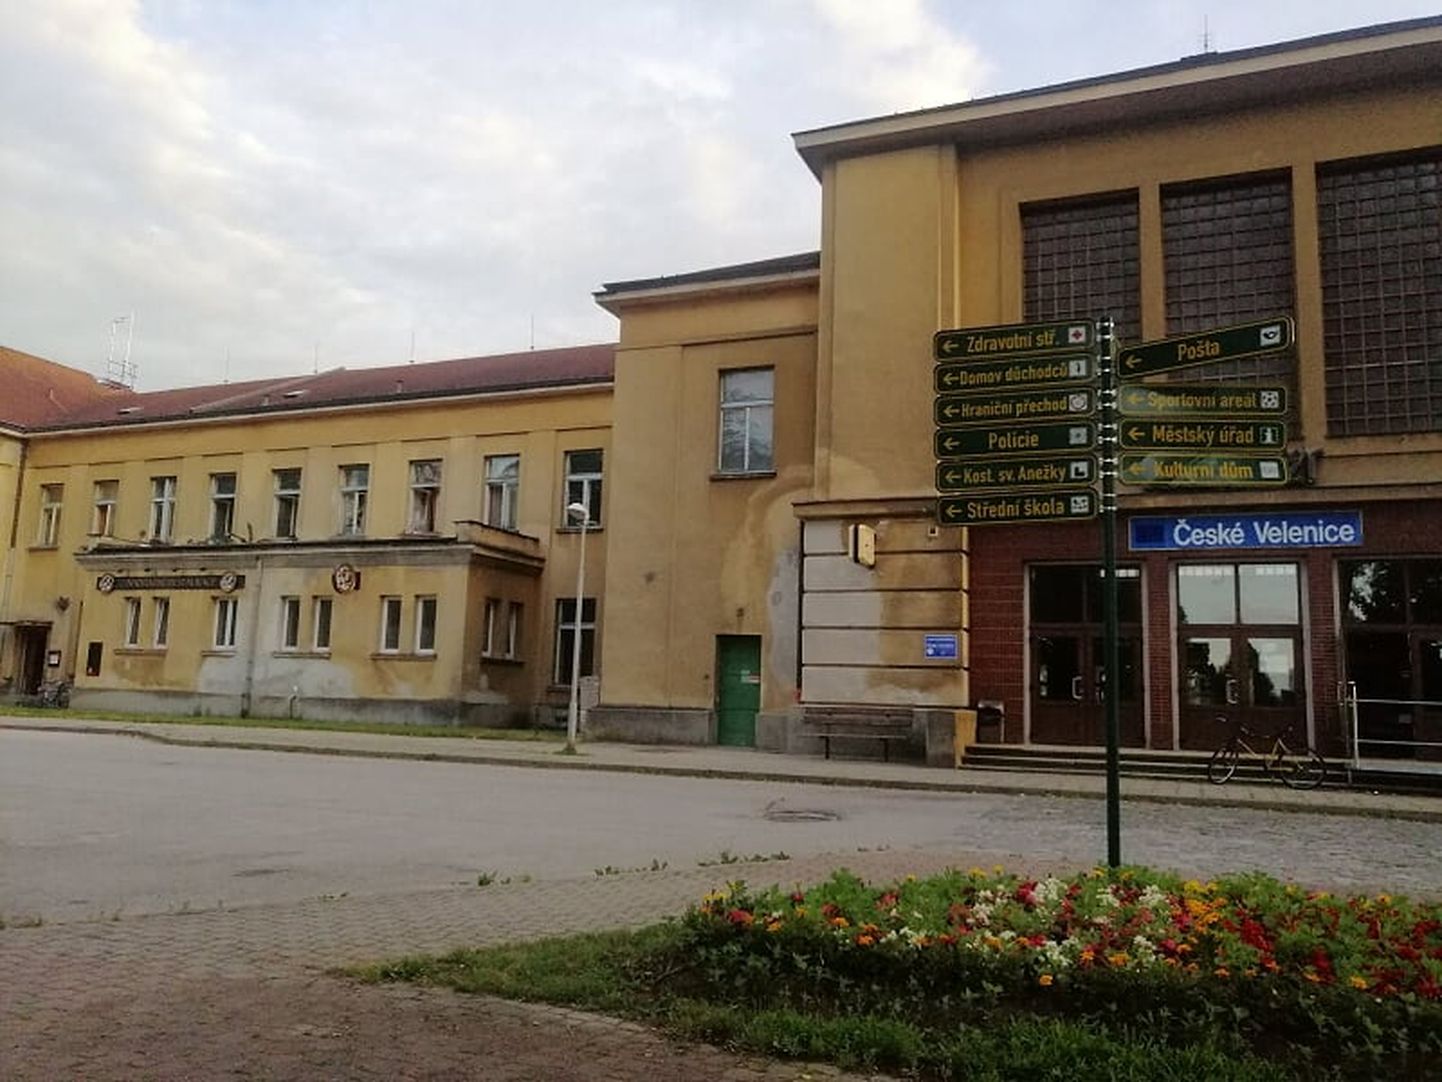 Чемодан, вокзал... Ческе-Веленице. Здание вокзала представляет историческую ценность.